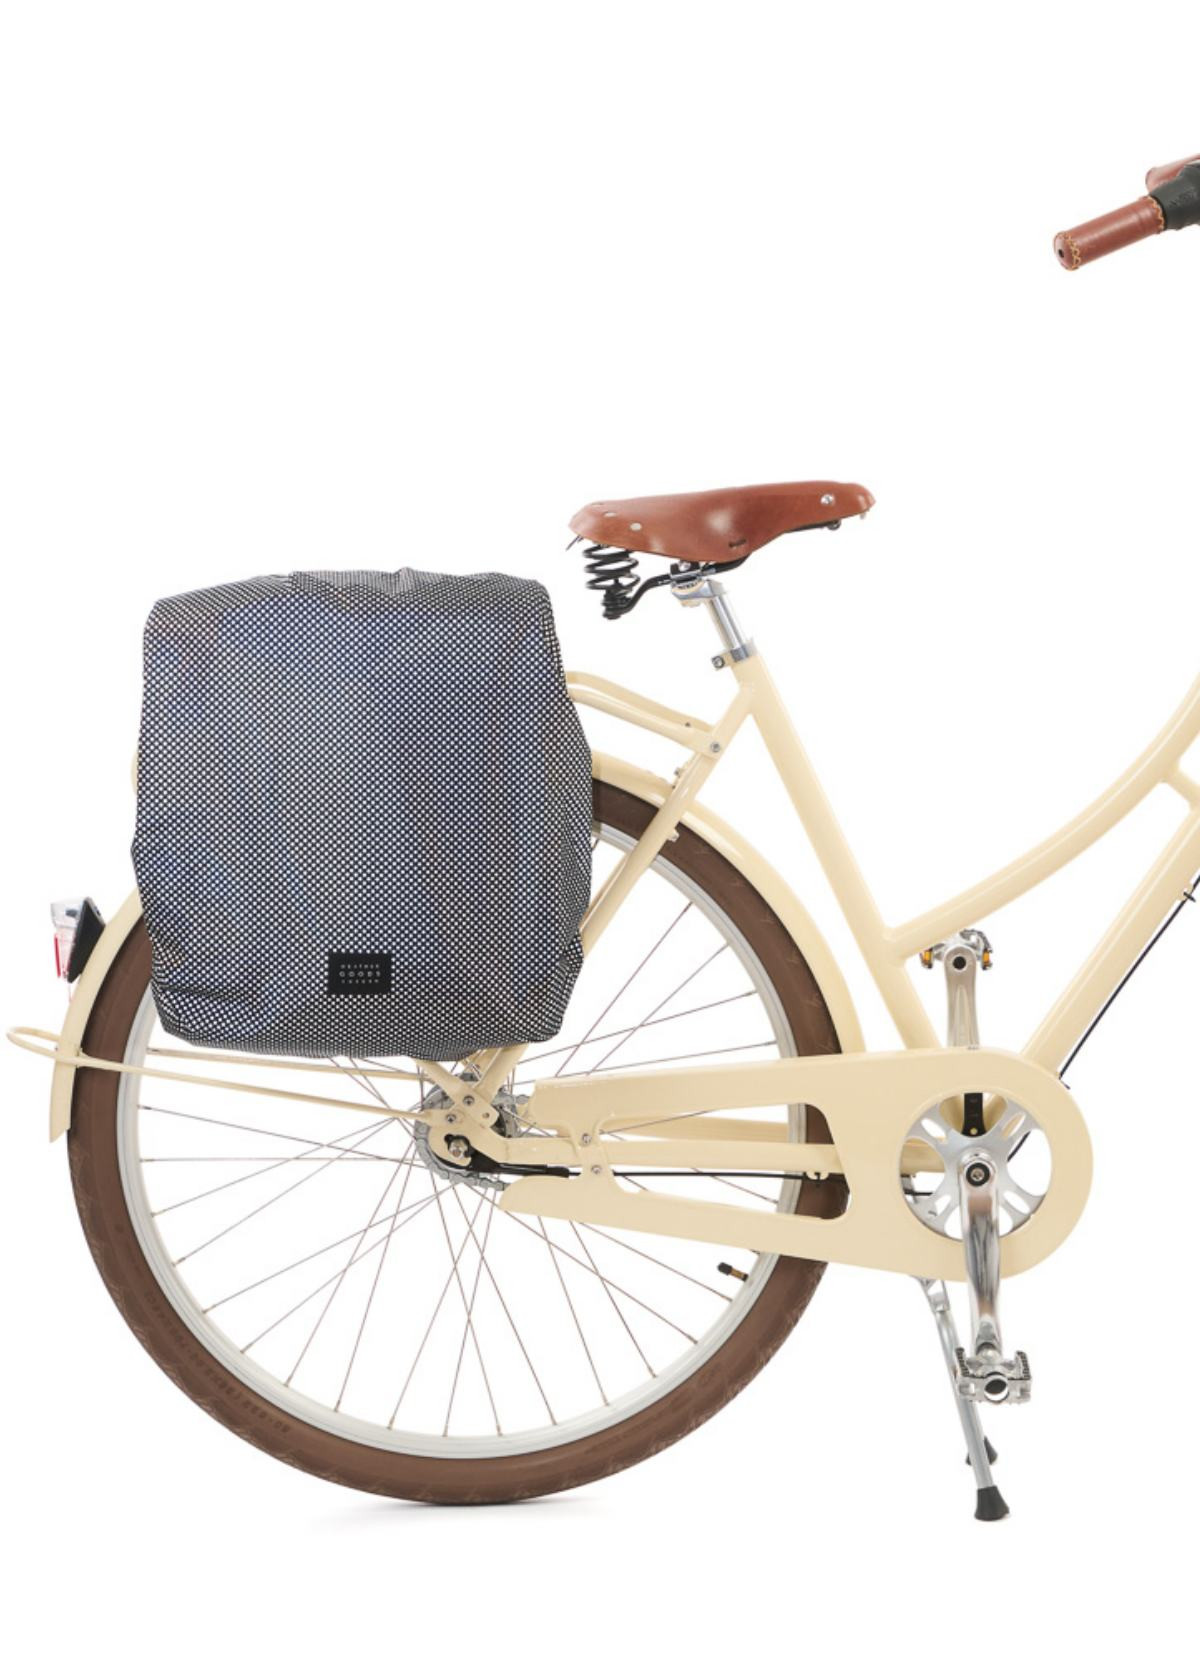 Housse imperméable pour panier vélo Keep N Dry L Basil